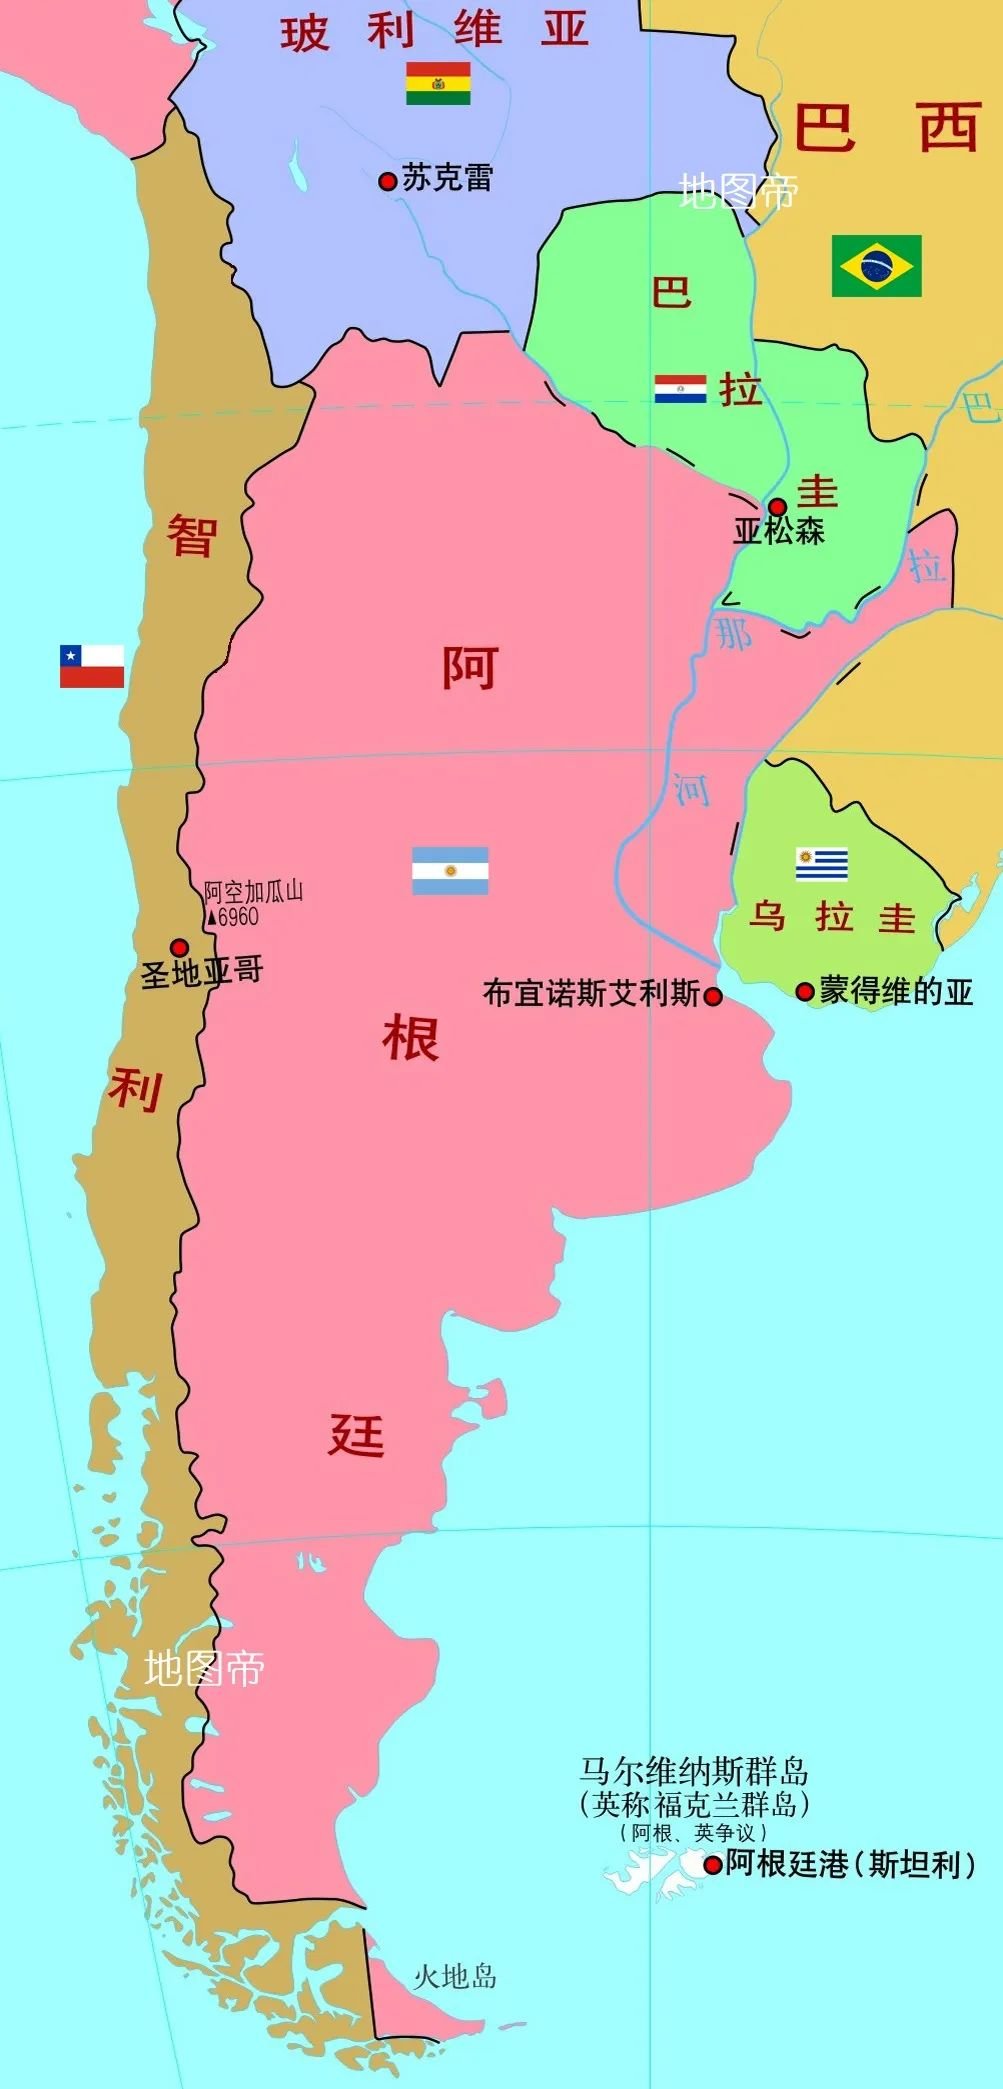 潘帕斯地图图片